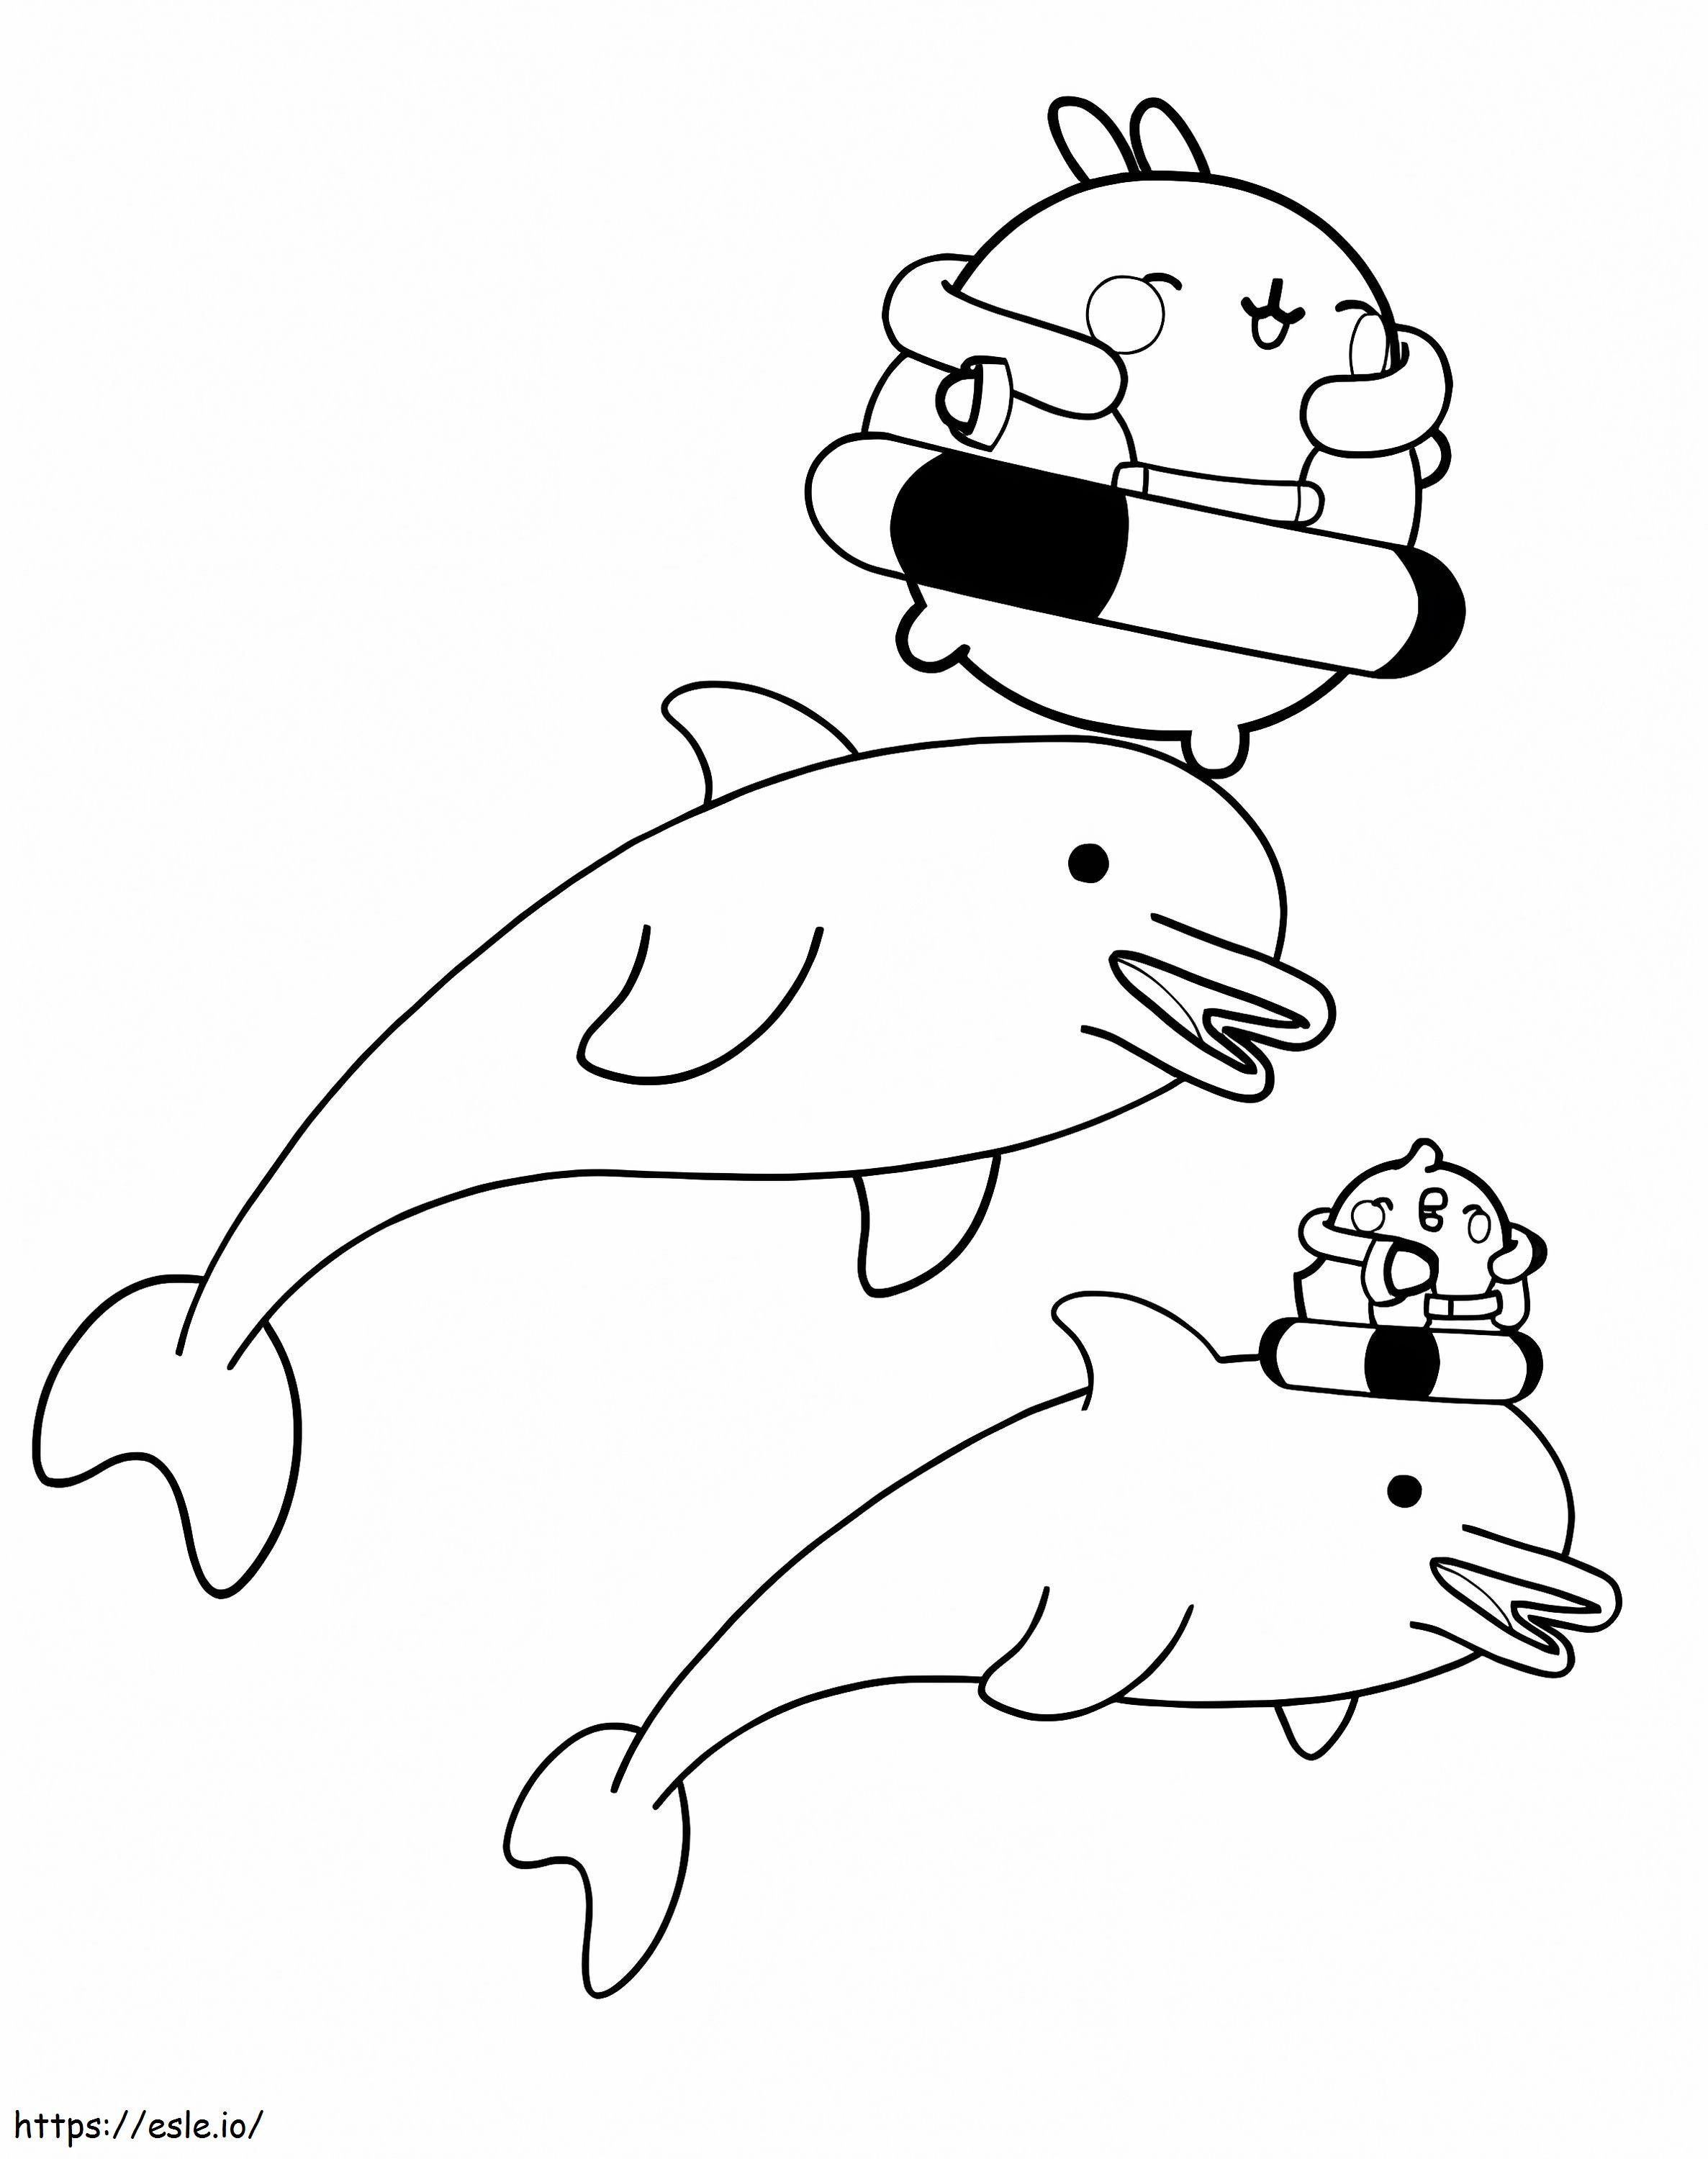 Molang i delfiny kolorowanka